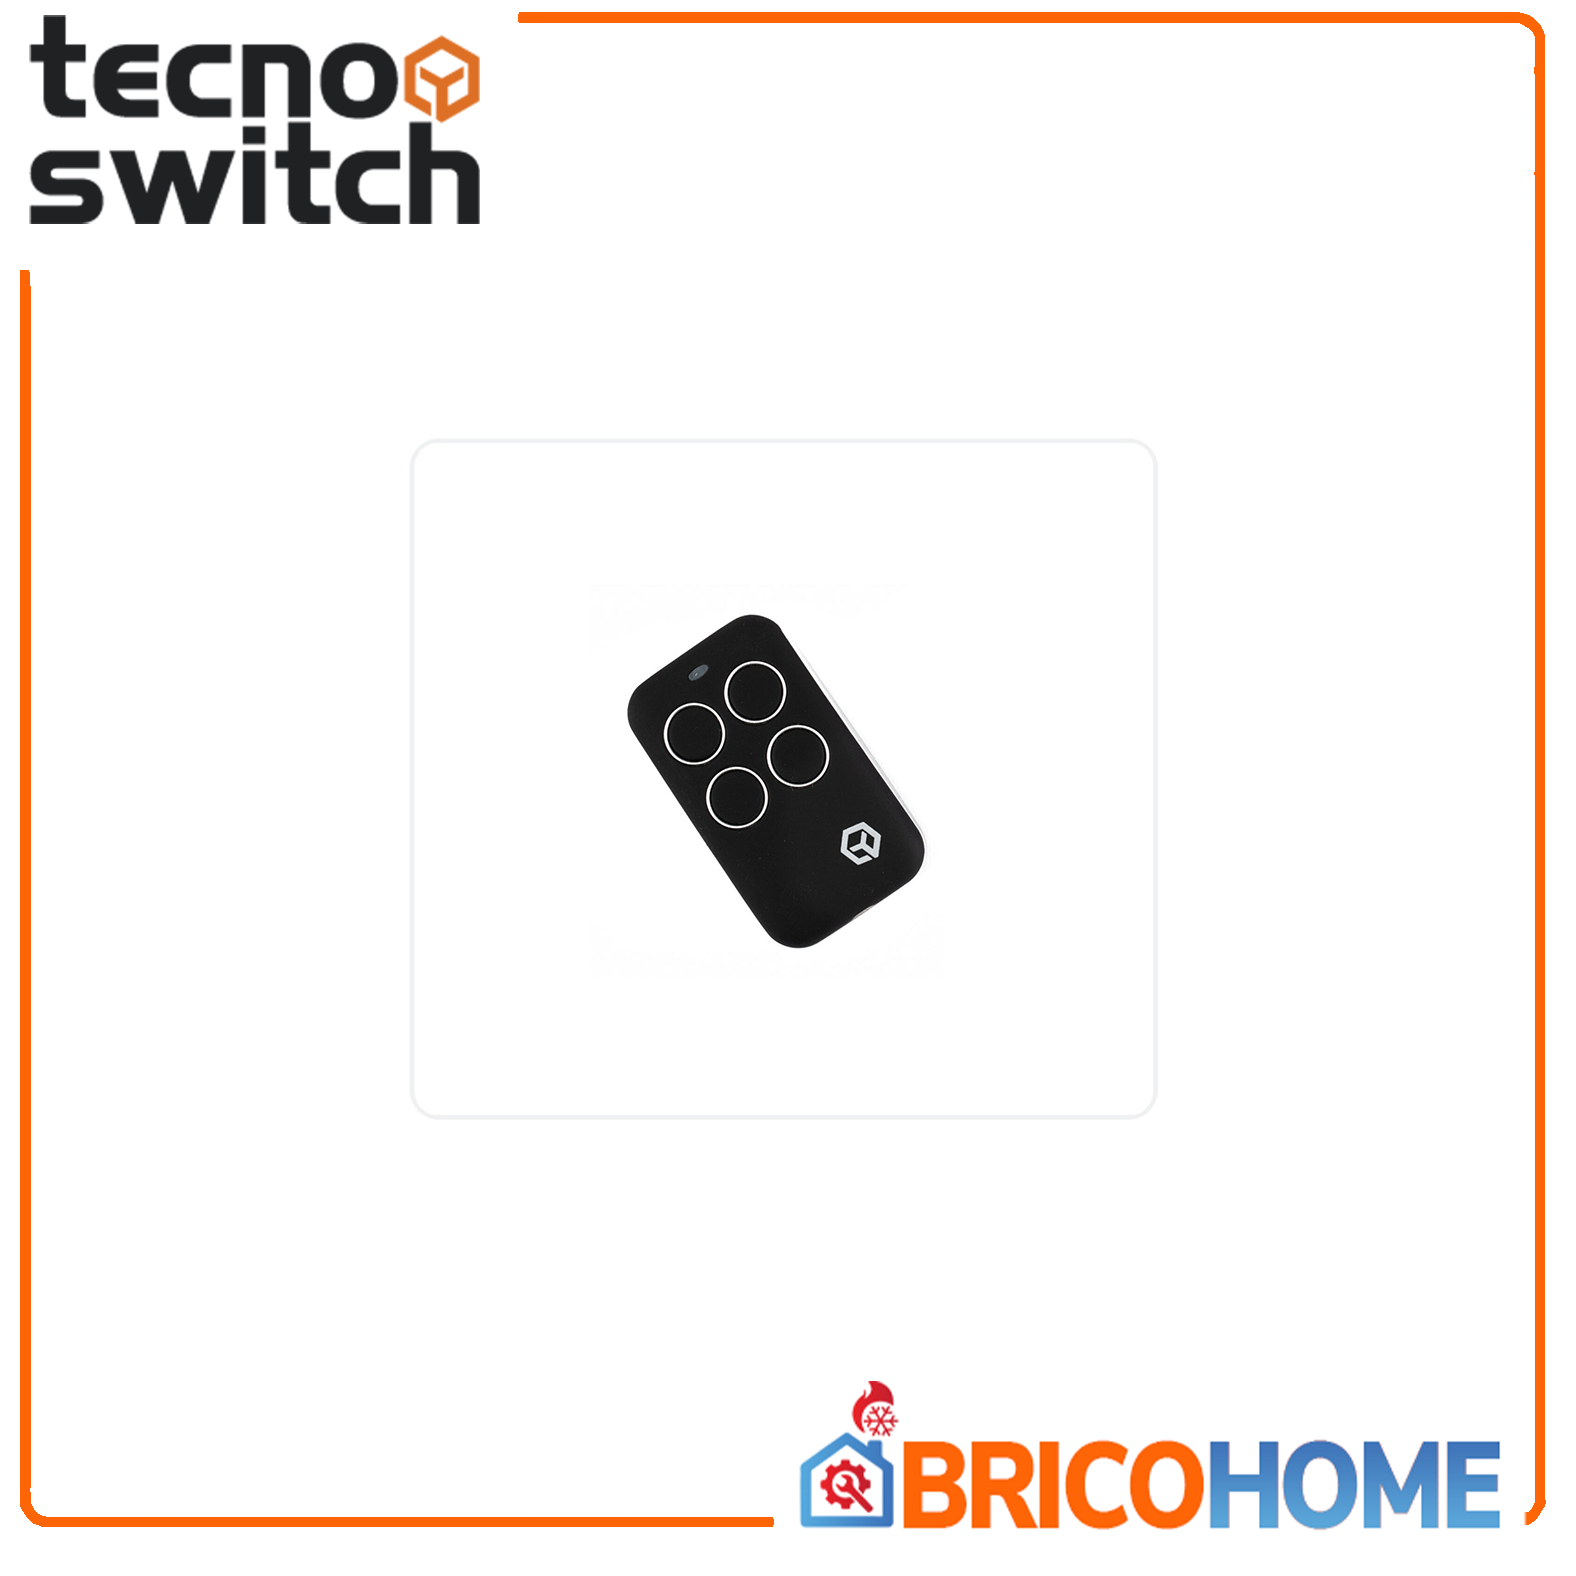 Telecomando multifrequenza a codice fisso e rolling code - Tecno Switch